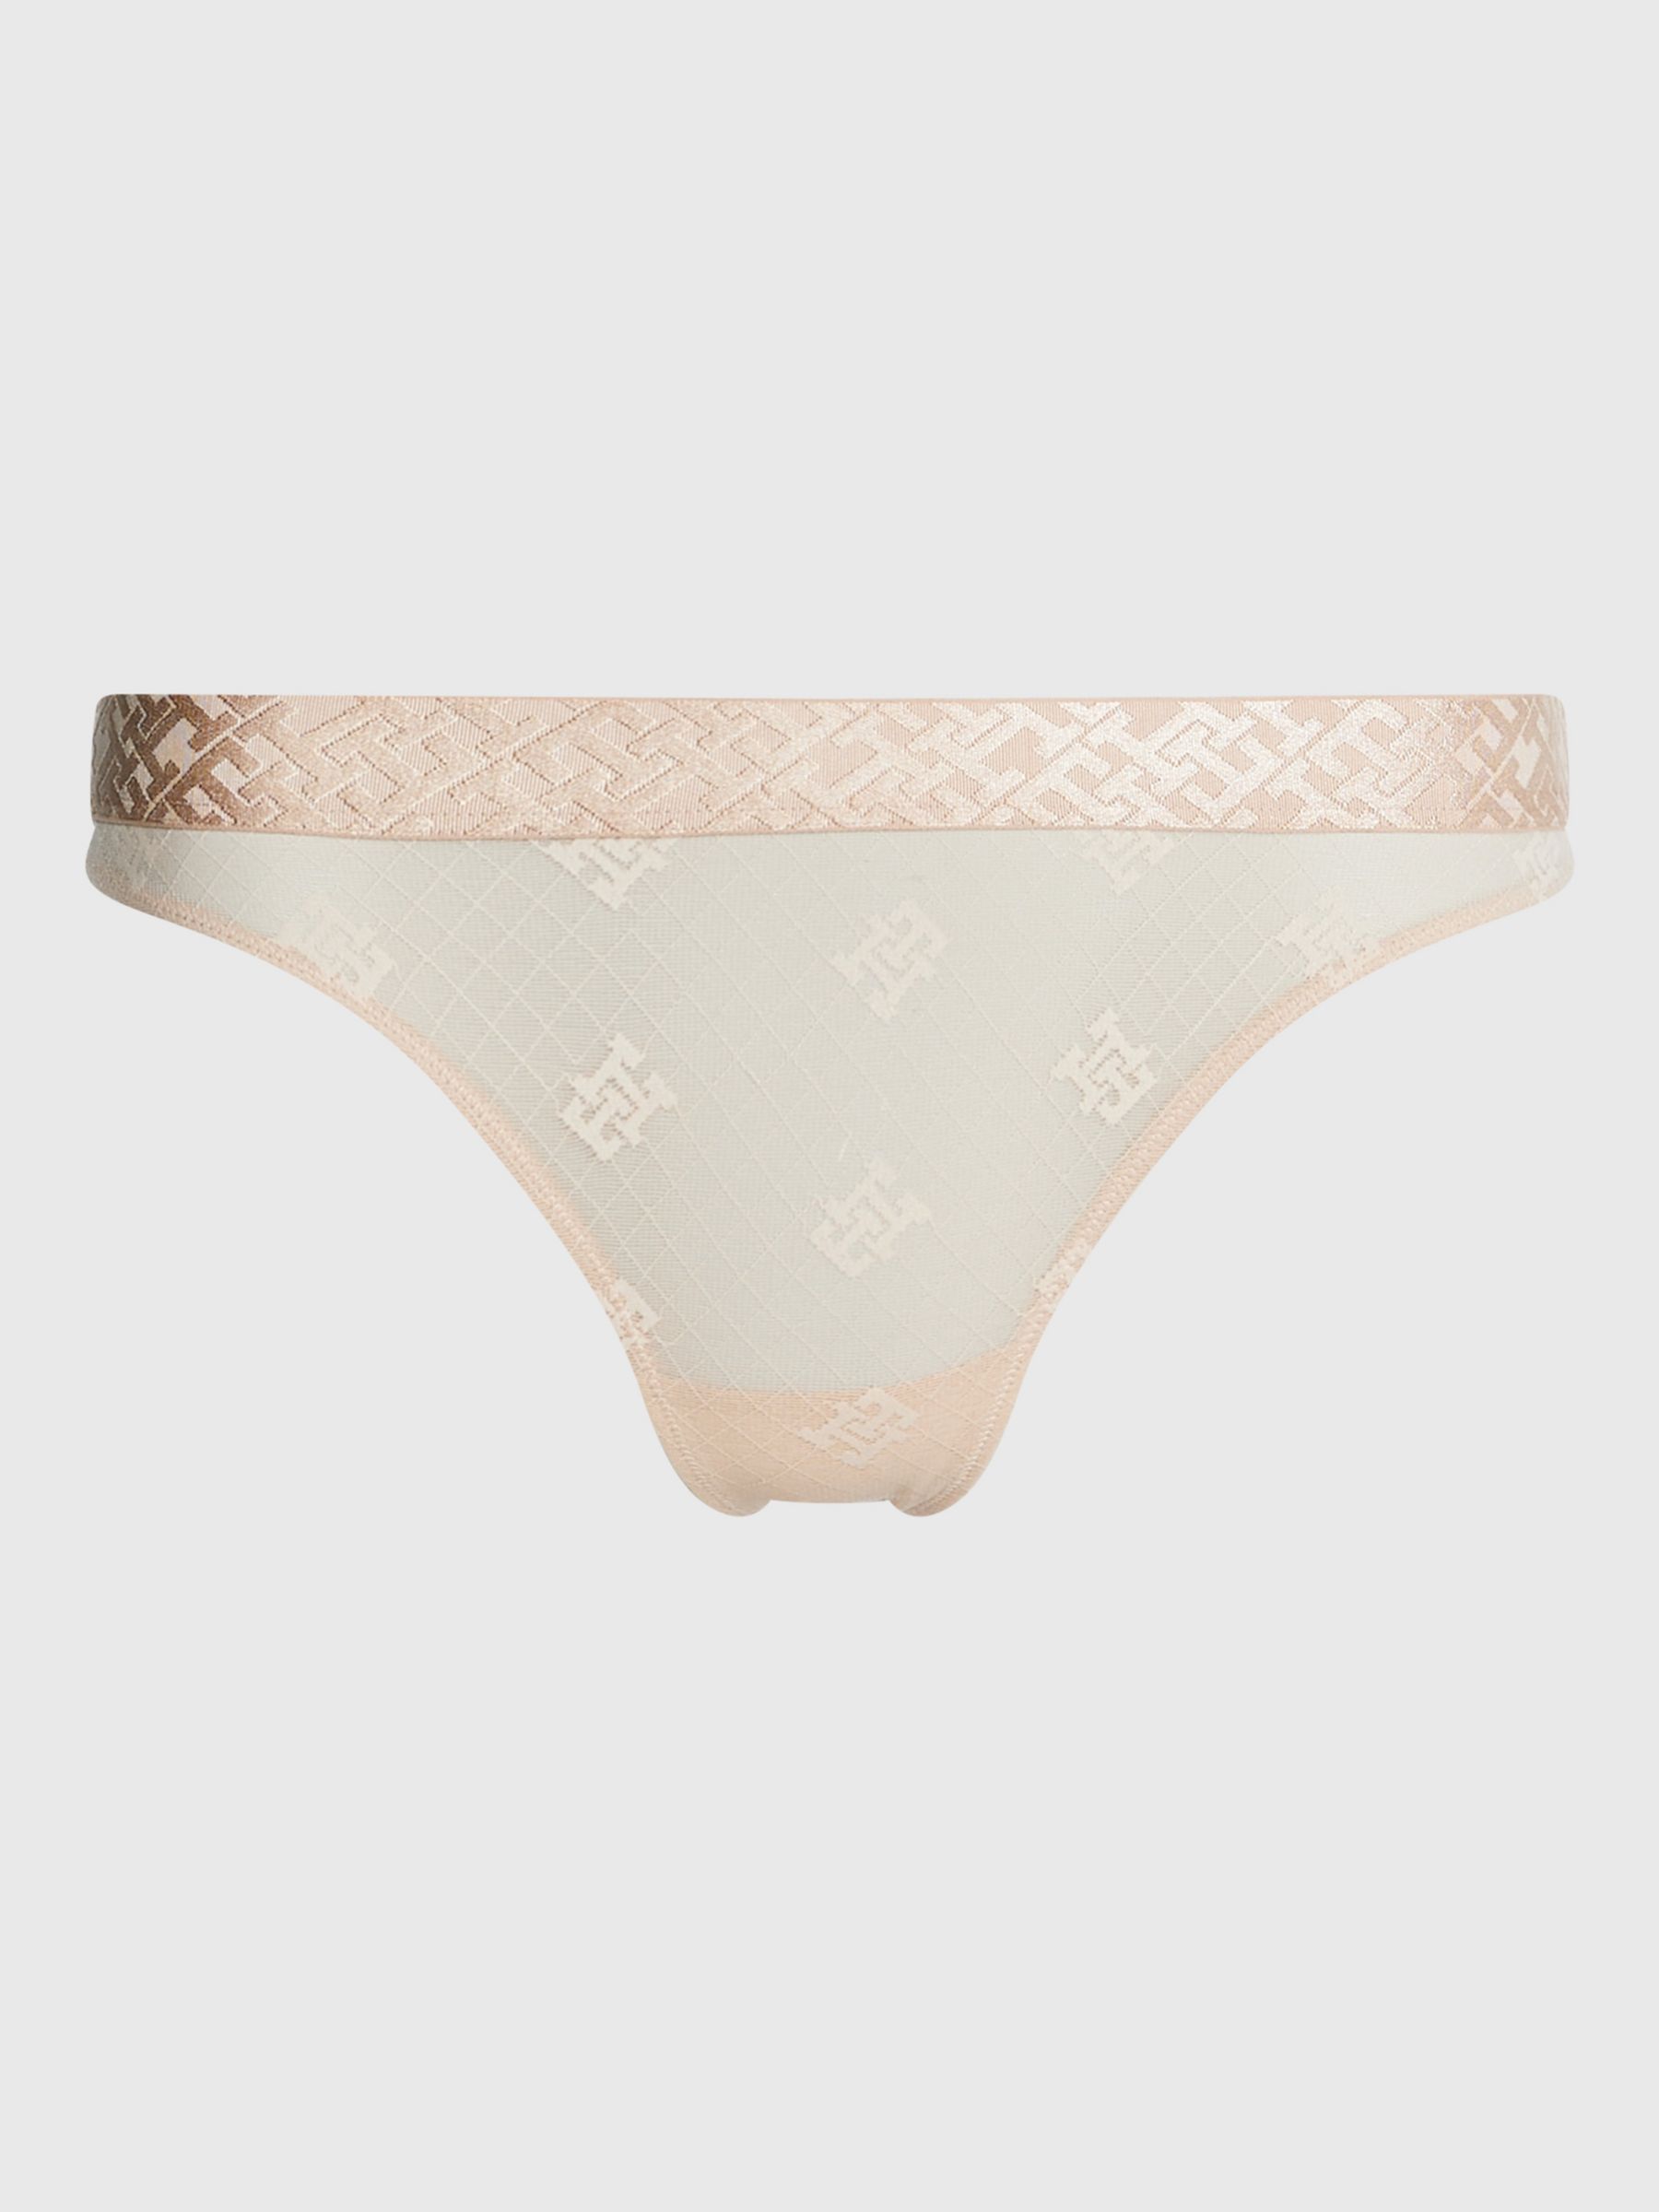 Tommy Hilfiger Underwear Panties & thongs for women, Buy online